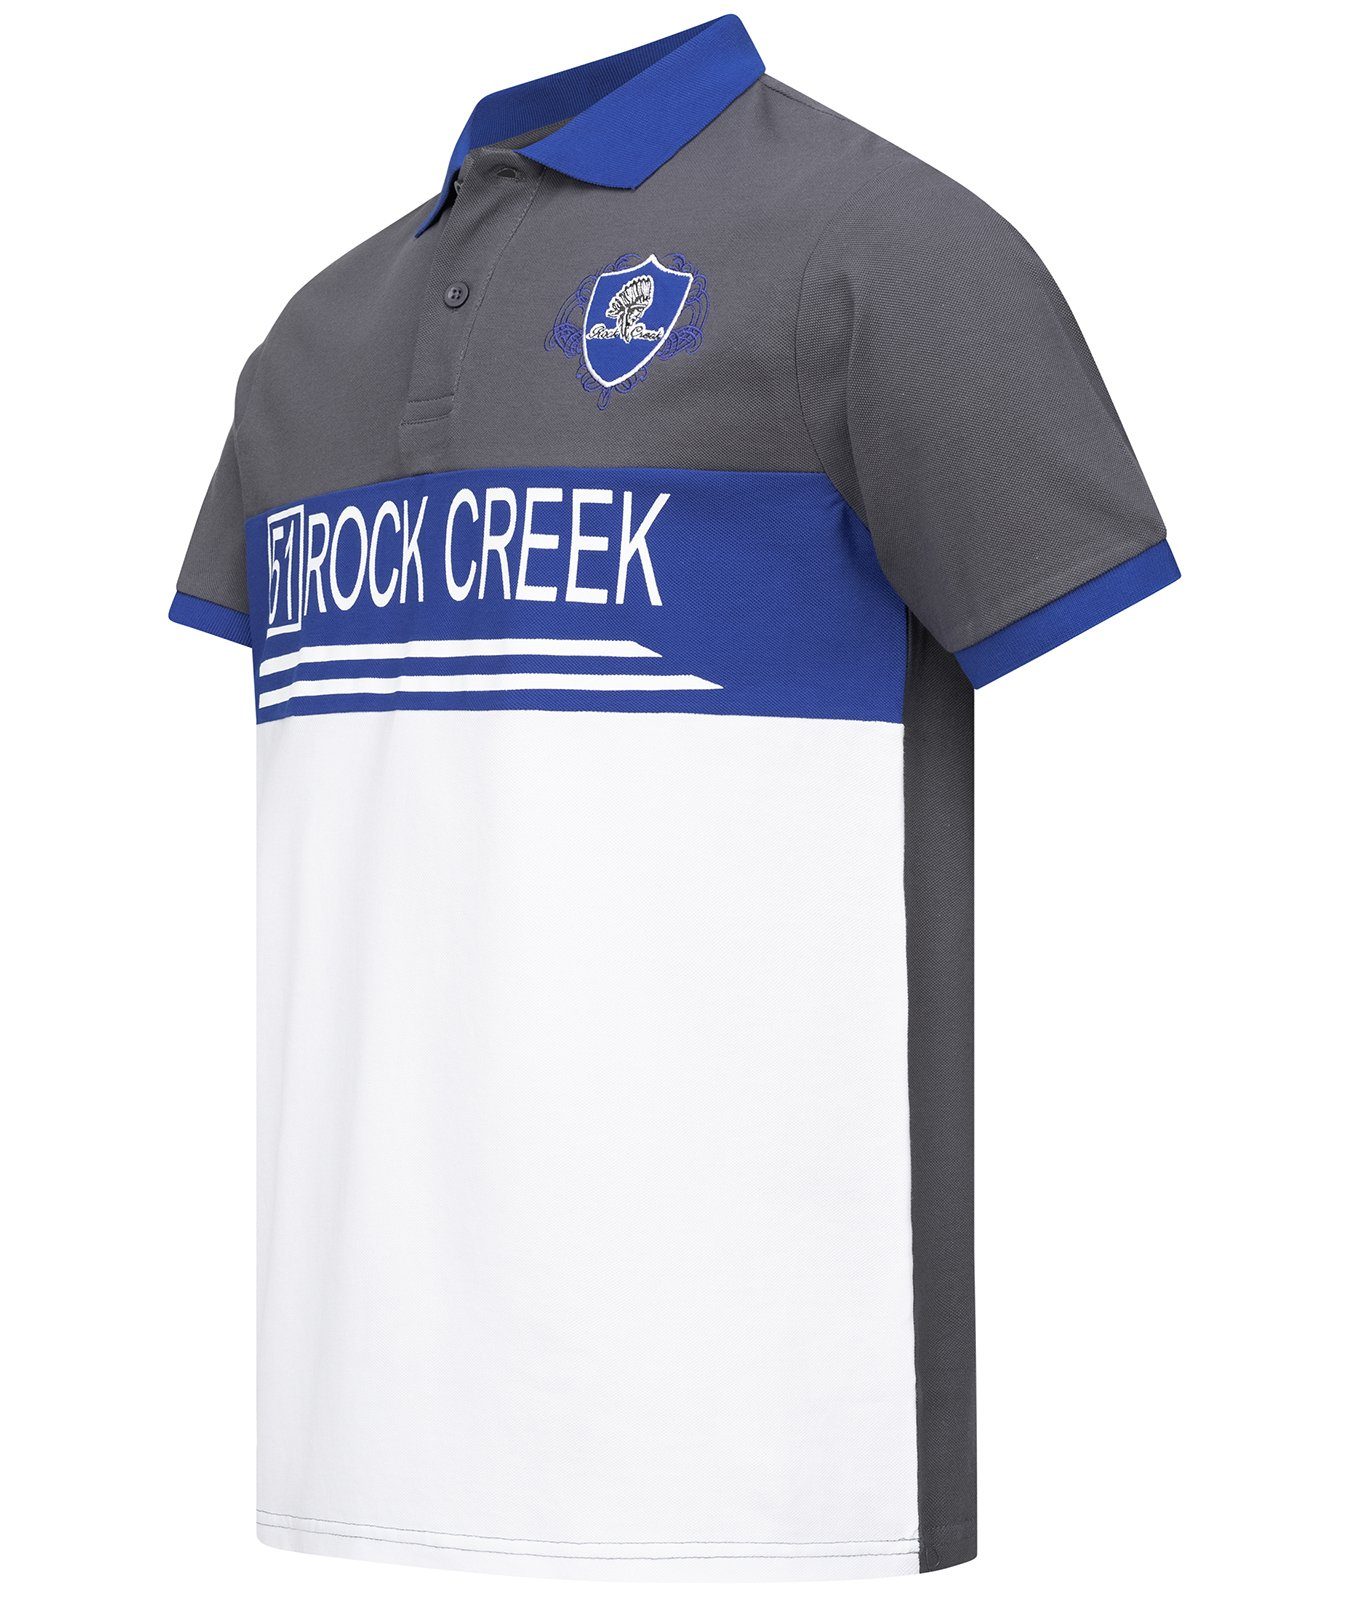 Rock Creek Poloshirt Herren H-306 Dunkelgrau Polokragen T-Shirt mit